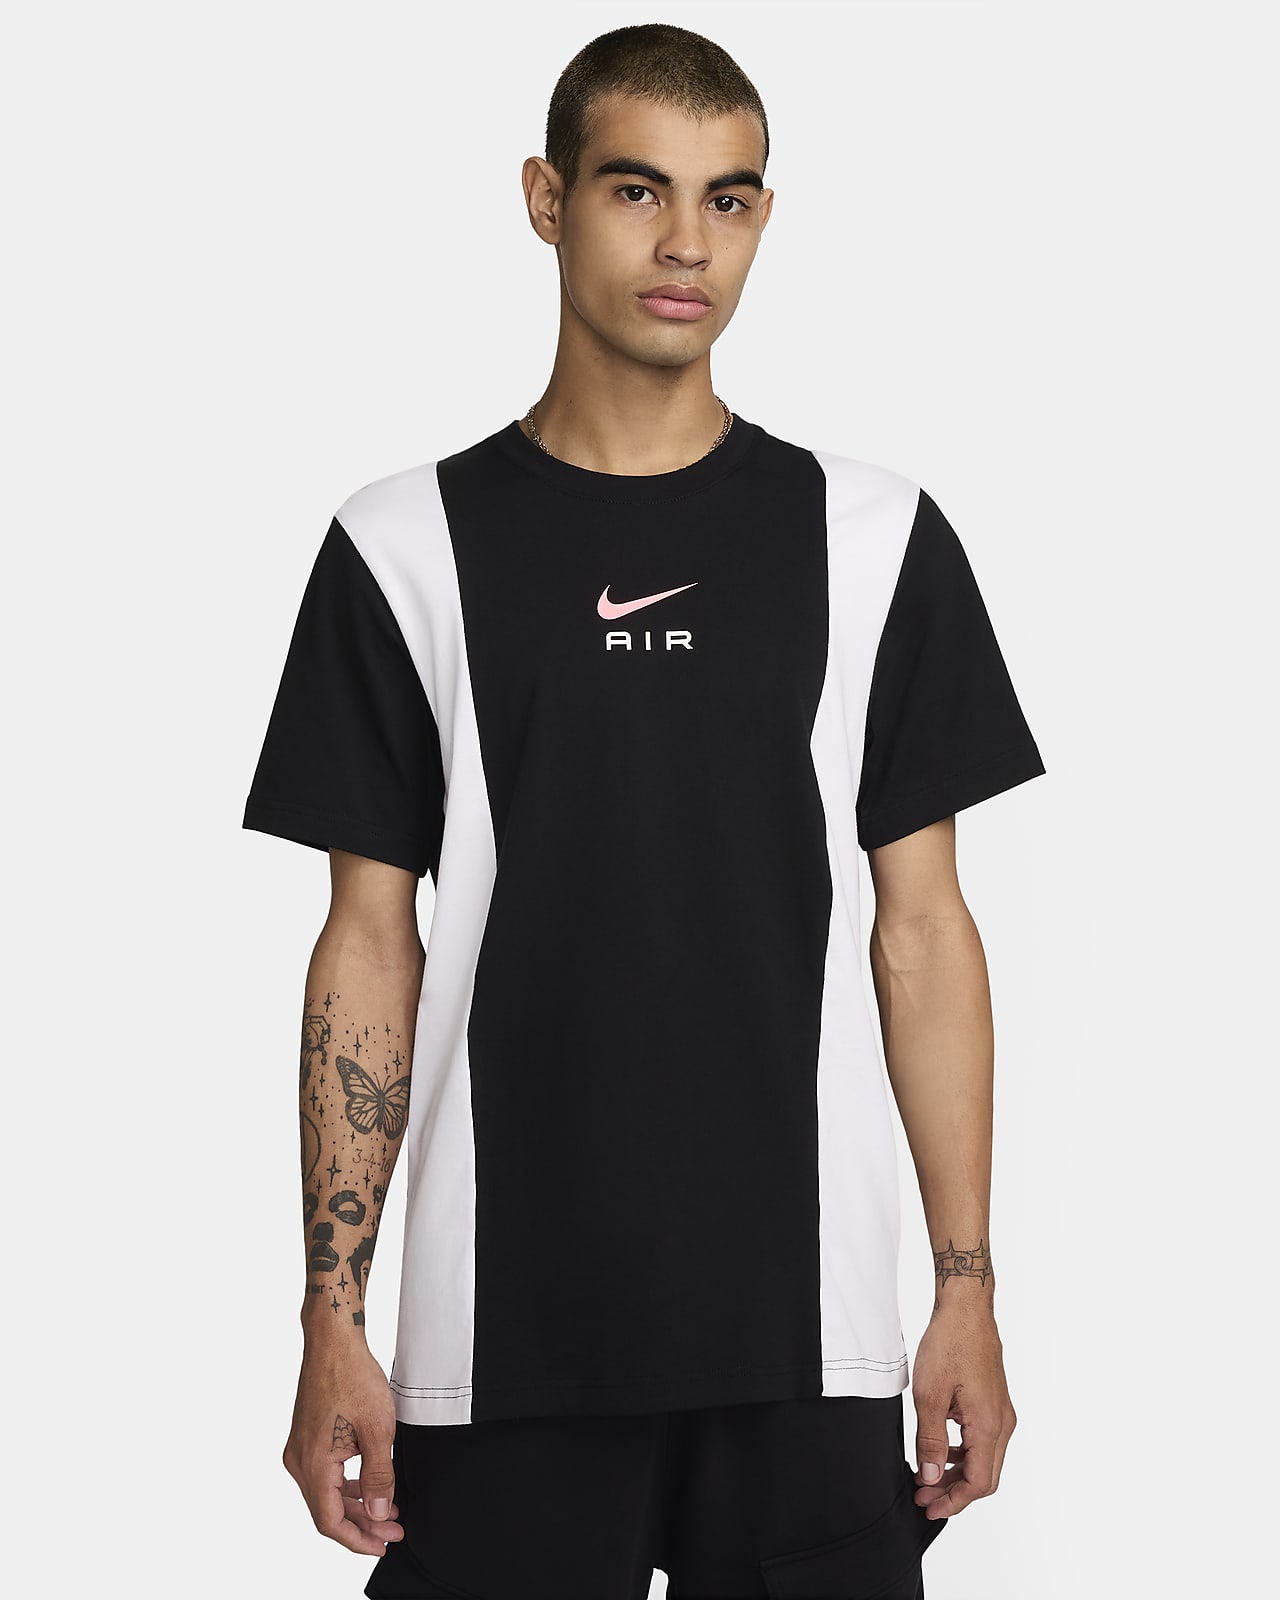 Pánské tričko Nike Air s krátkým rukávem